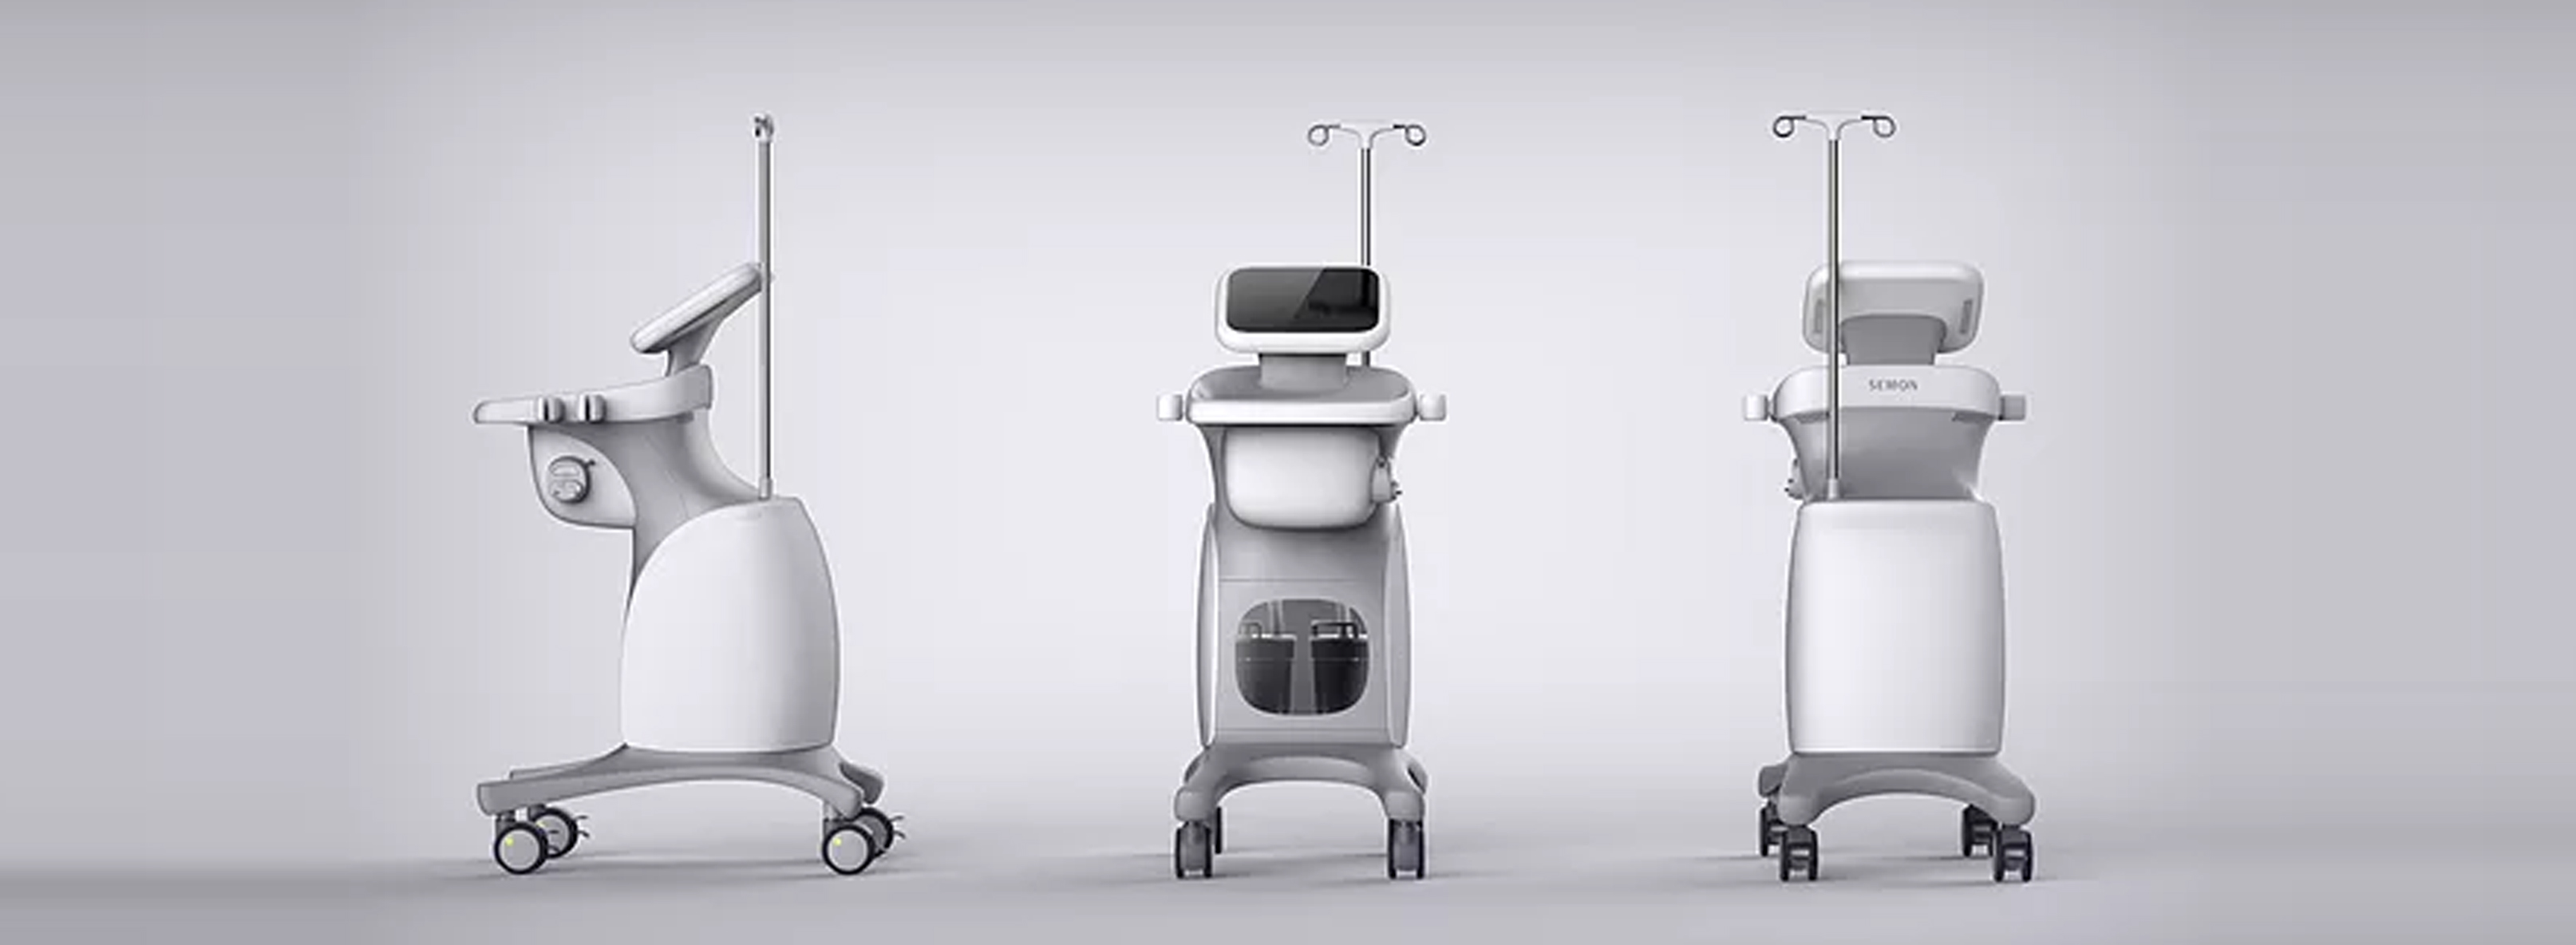 醫療器械工業設計的未來發展